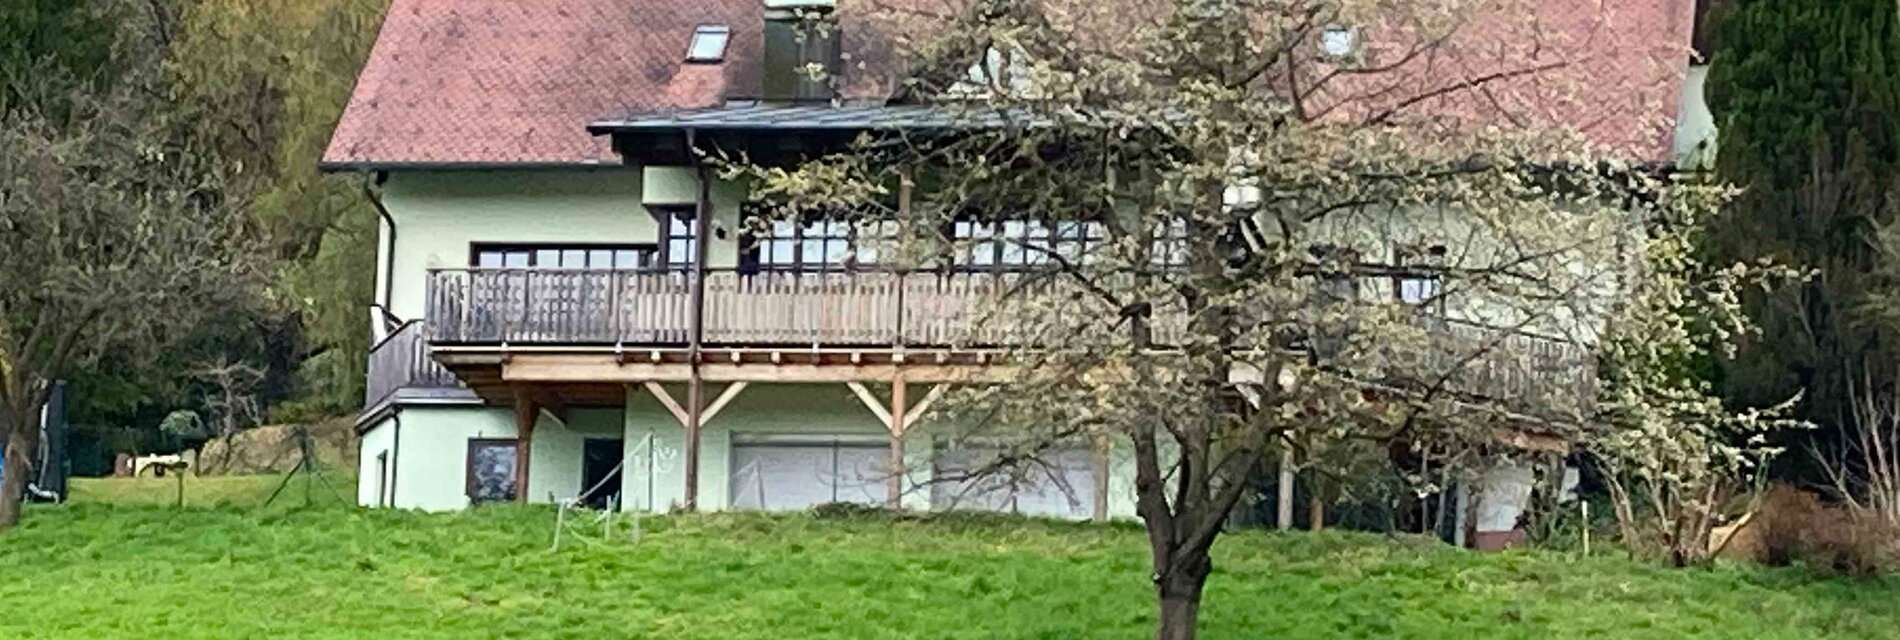 FerienwohnungMiLo-Haus-Murtal-Steiermark